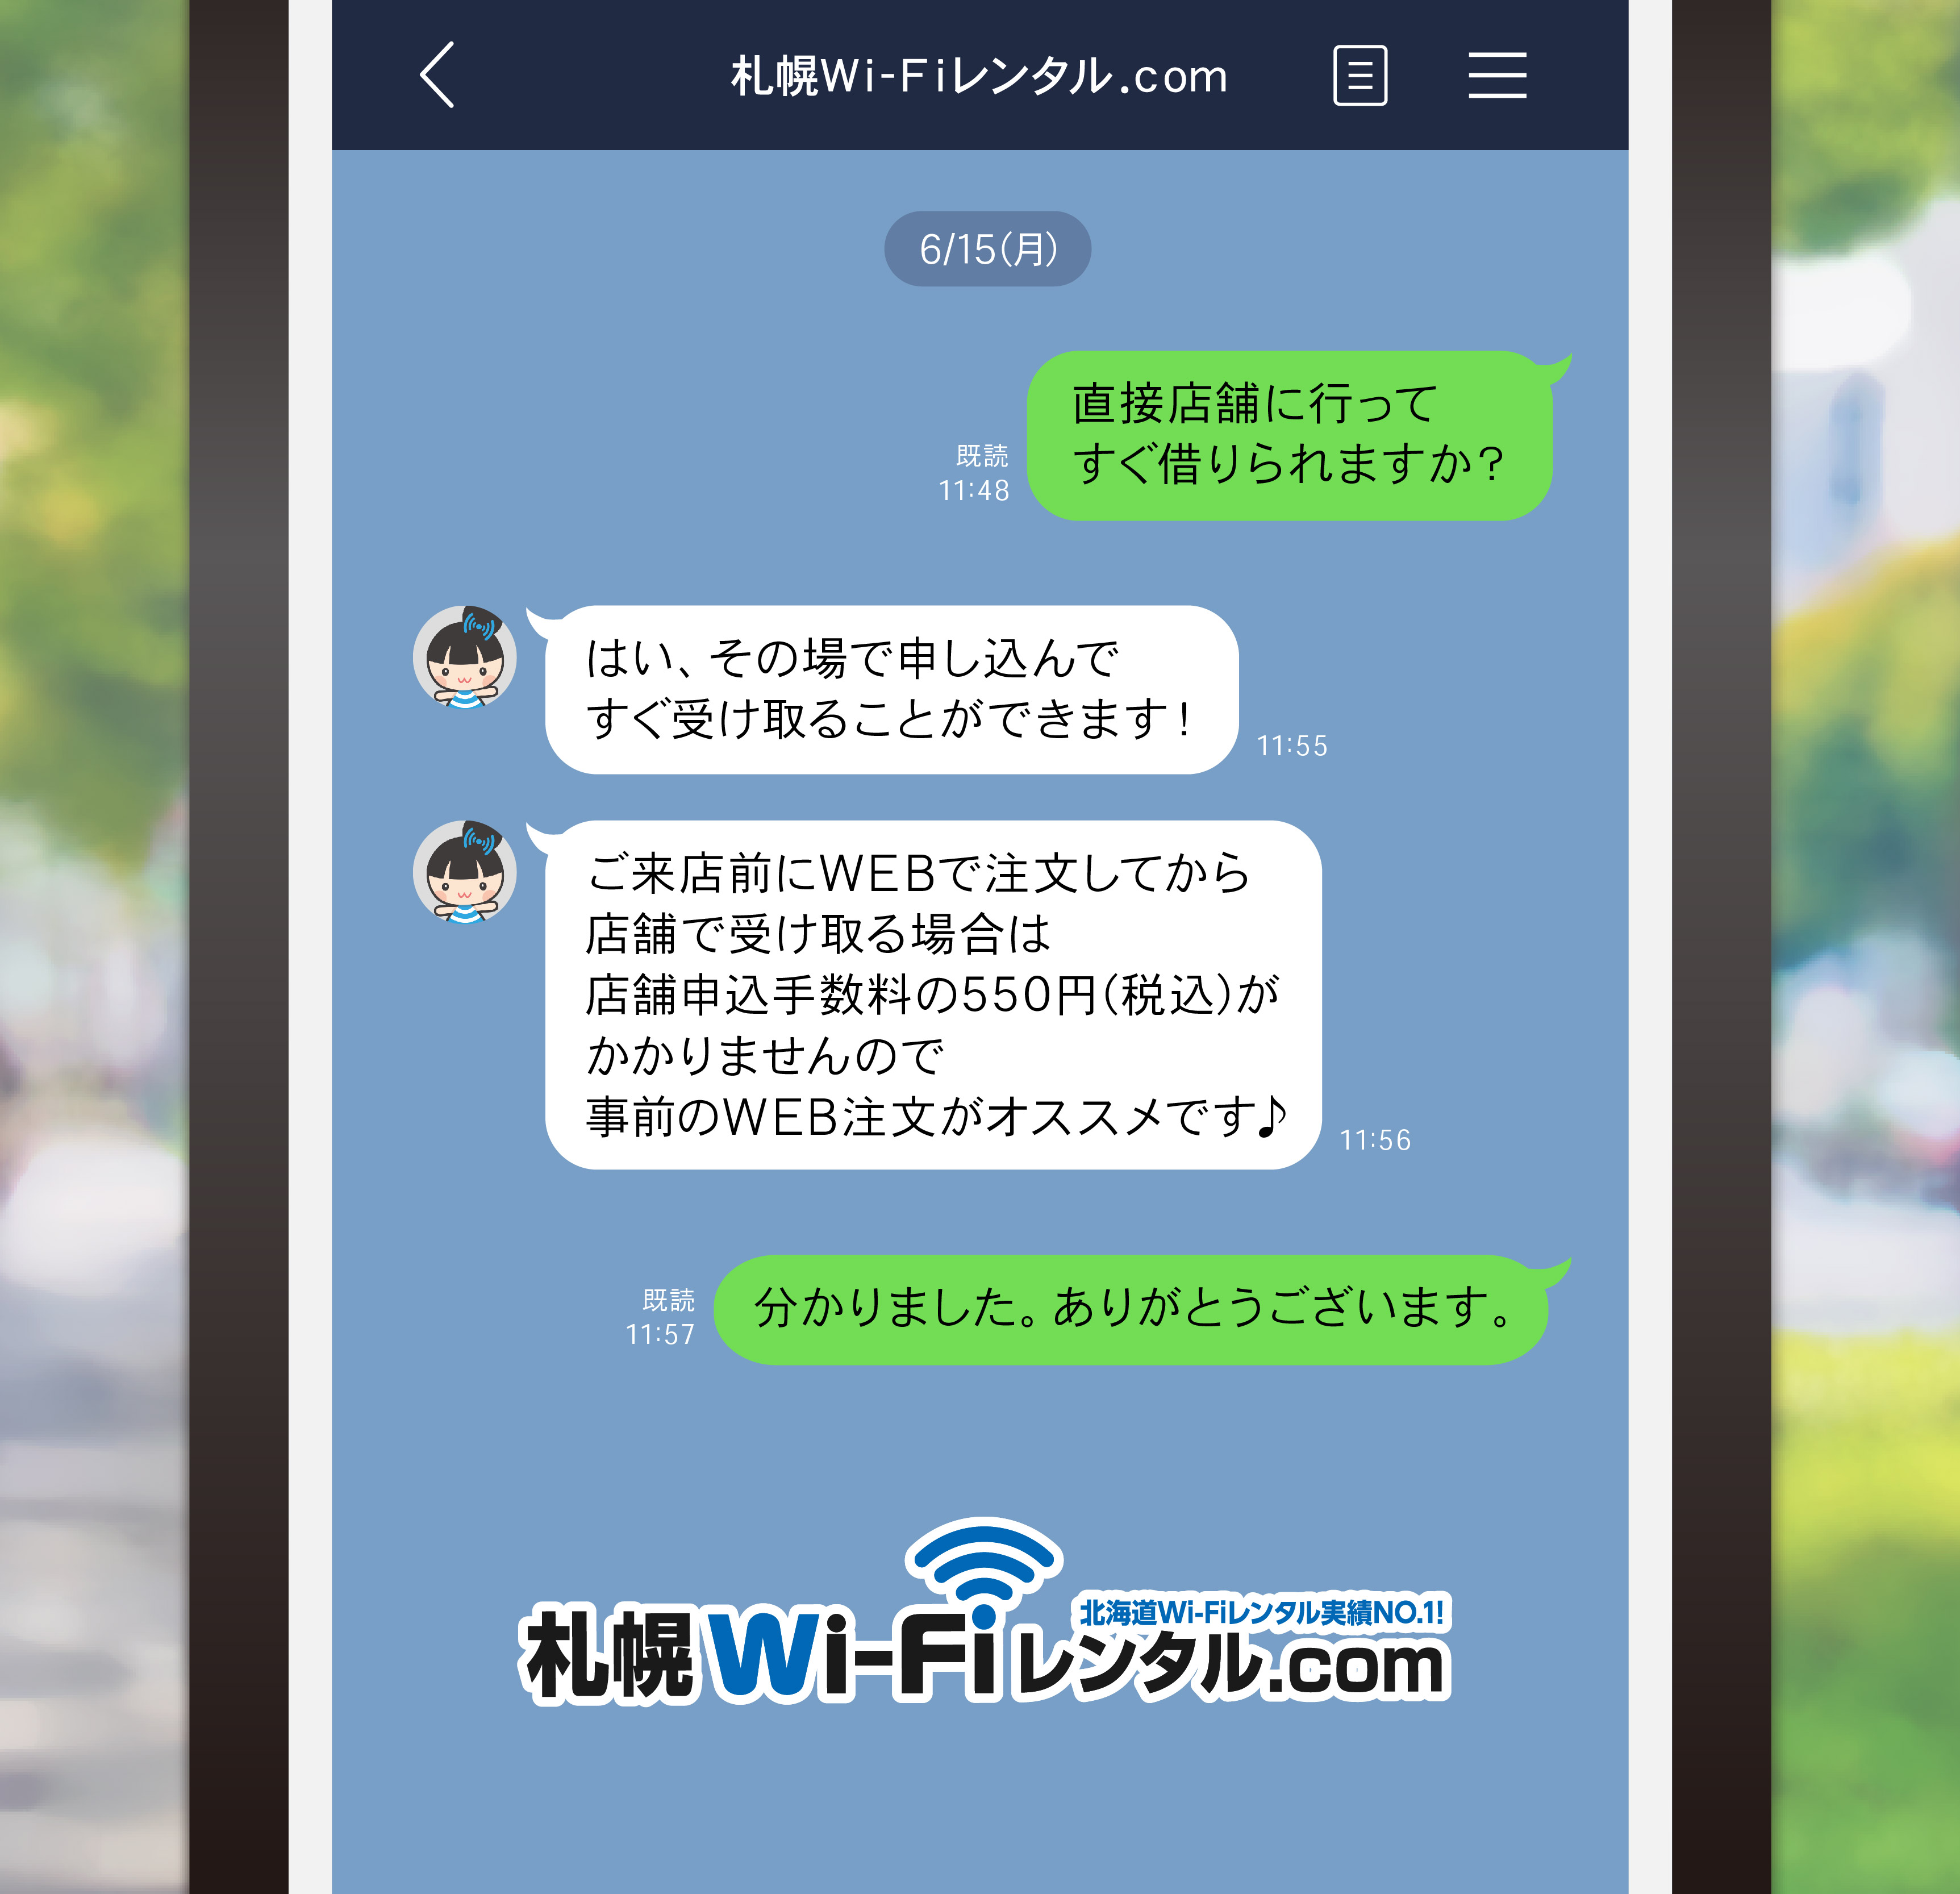 札幌Wi-Fiレンタル